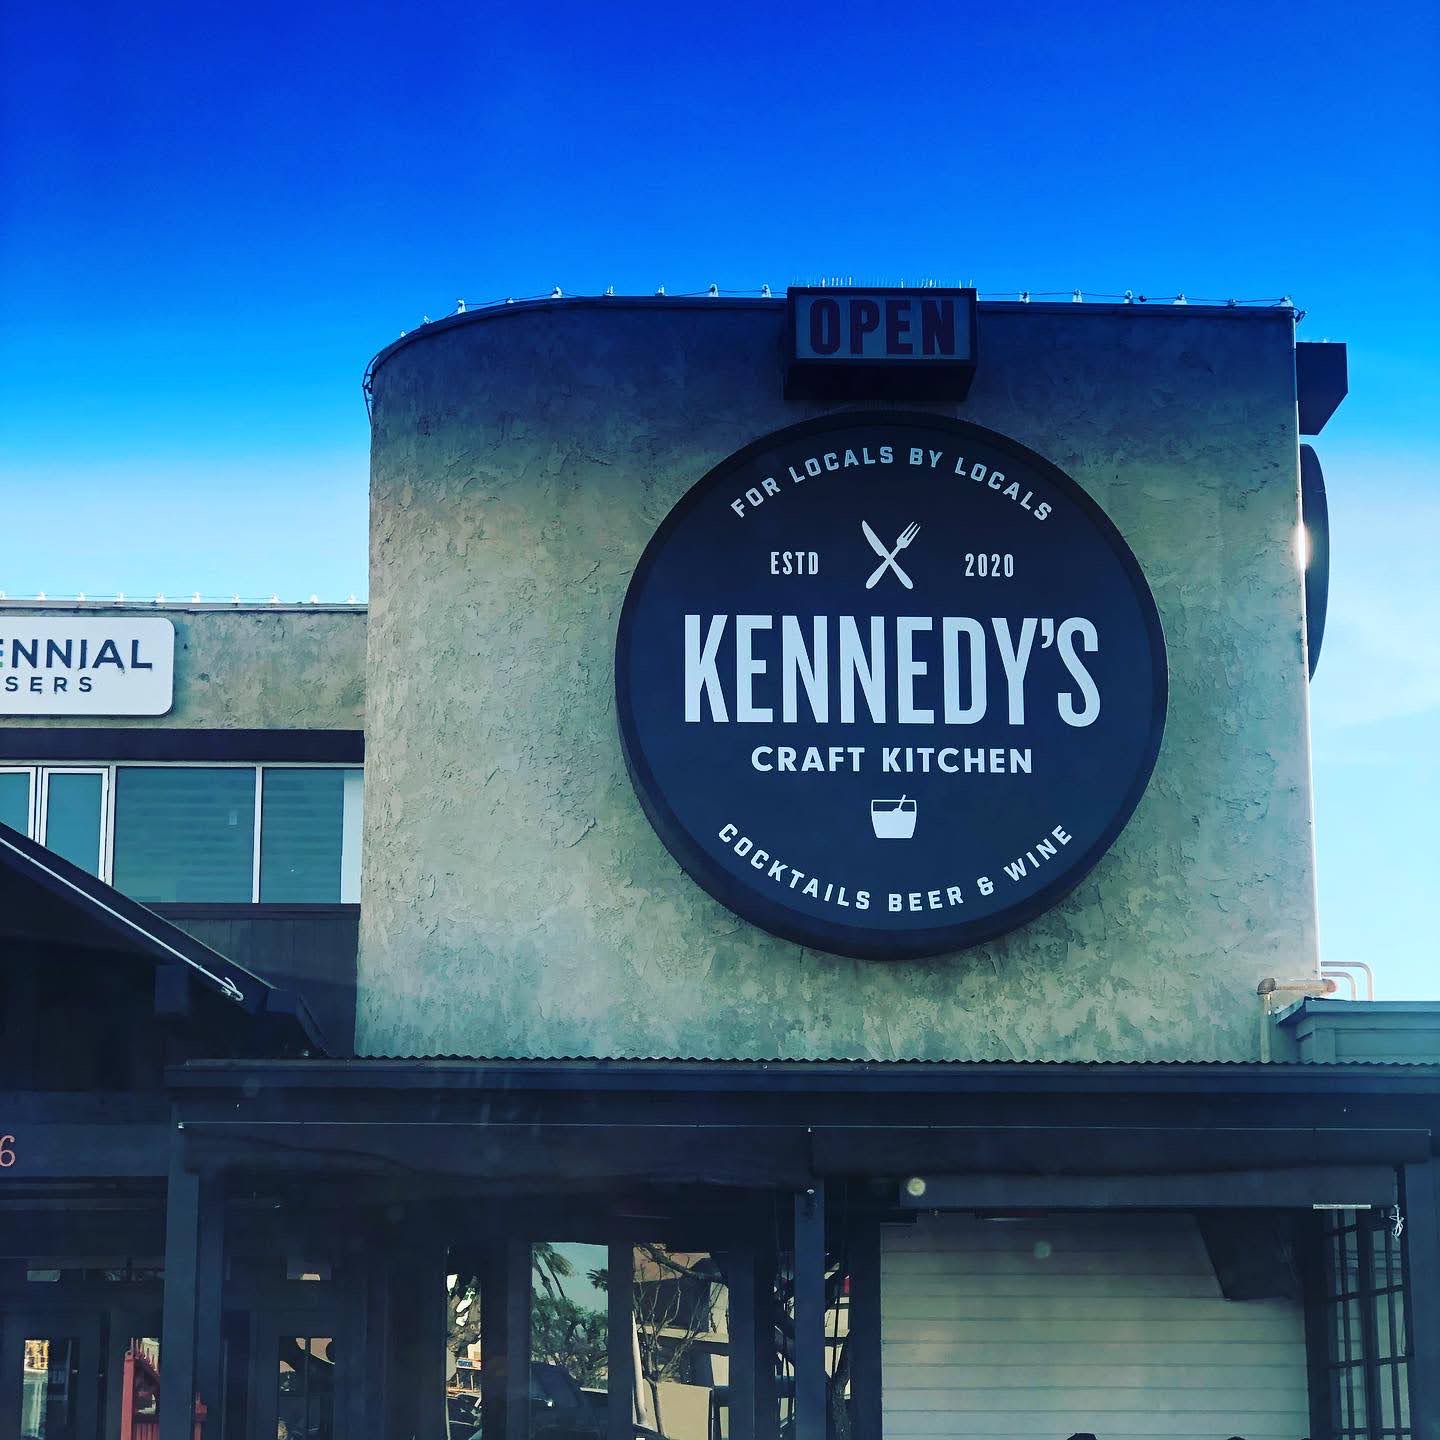 Kennedy's Craft Kitchen & Cocktails